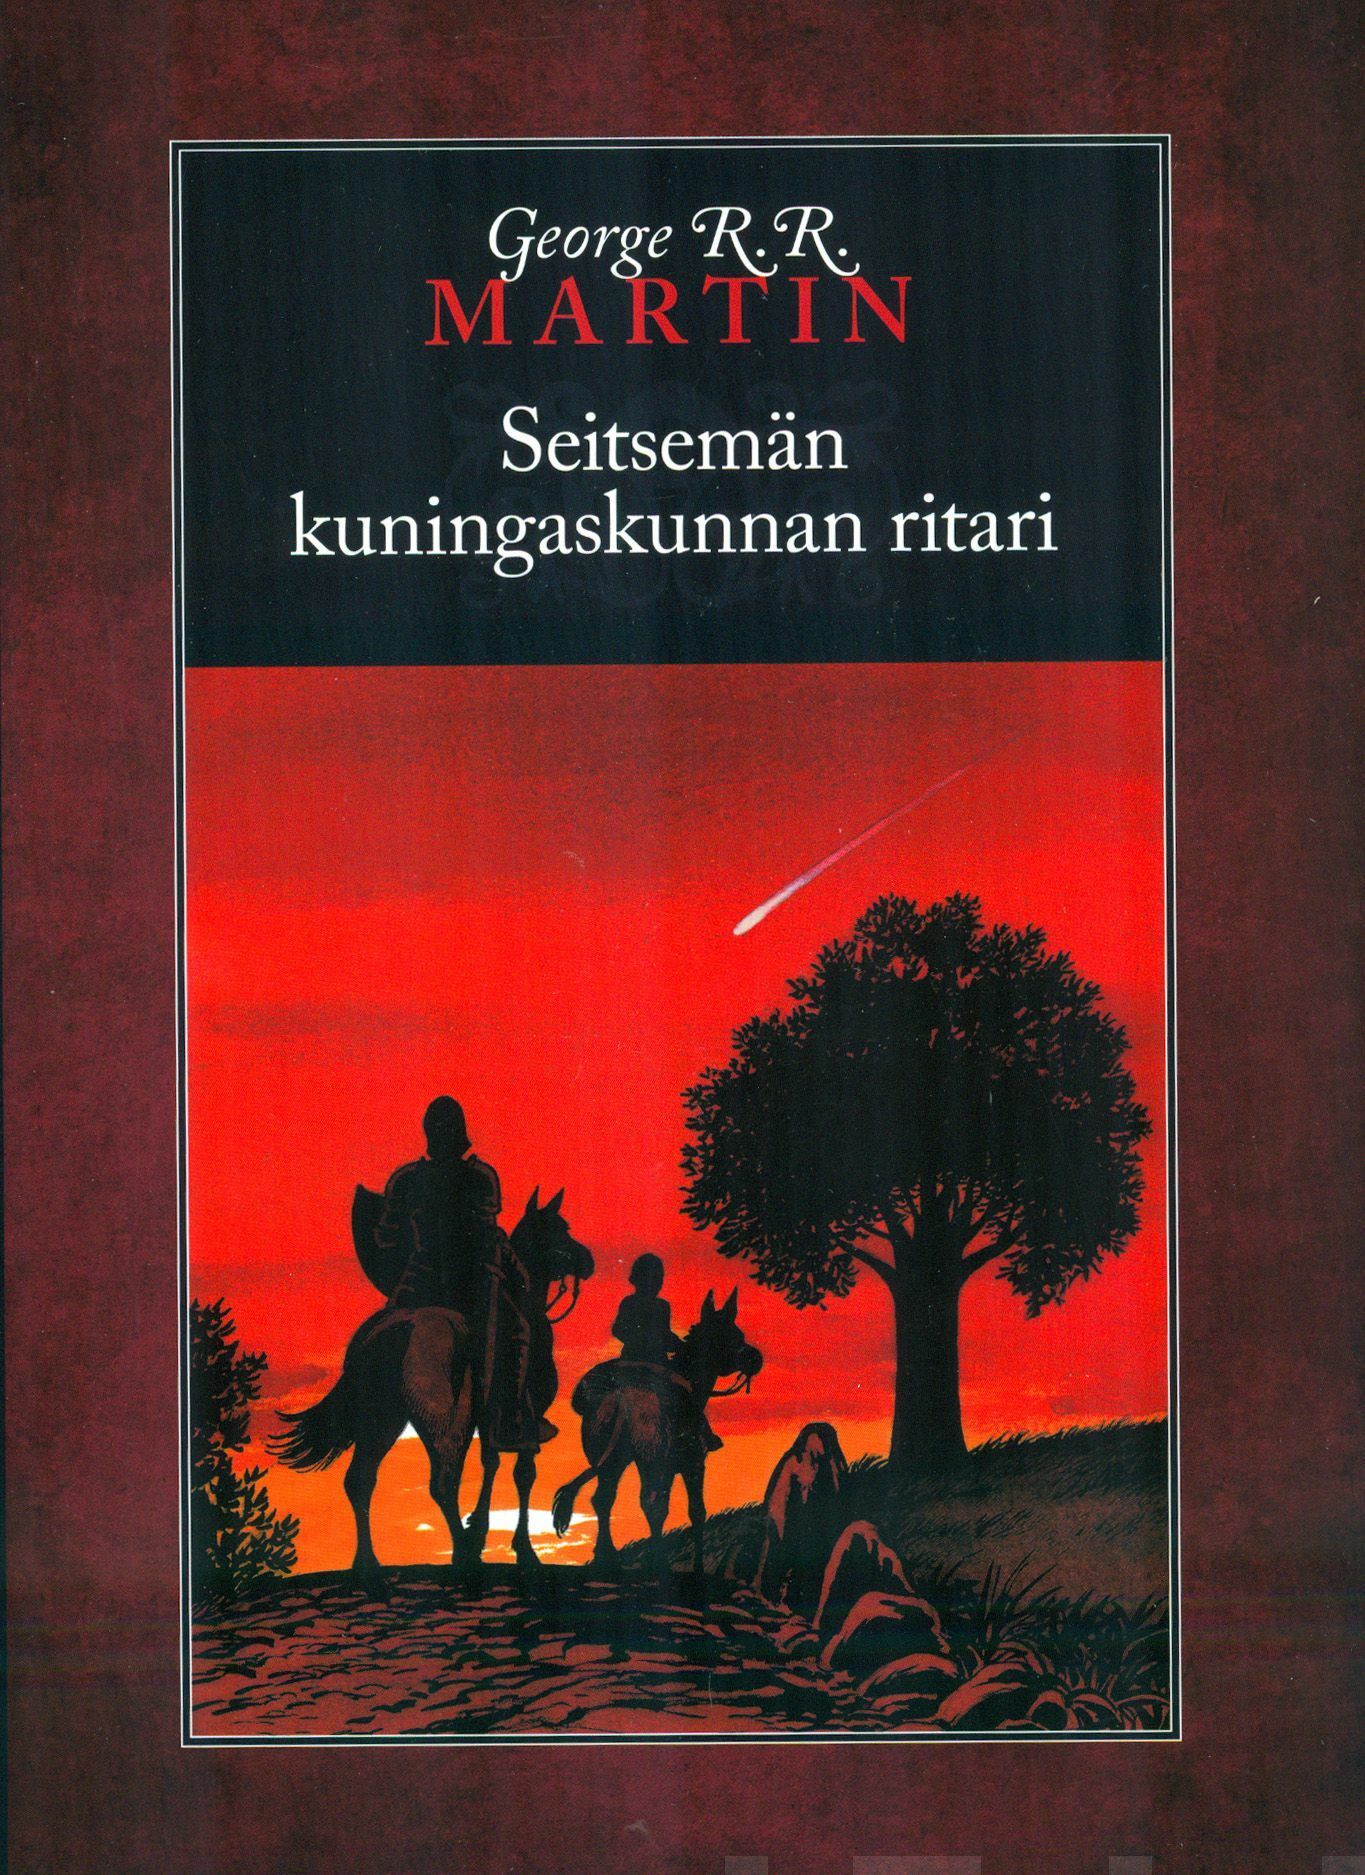 Valtaistuinpeli by George R.R. Martin